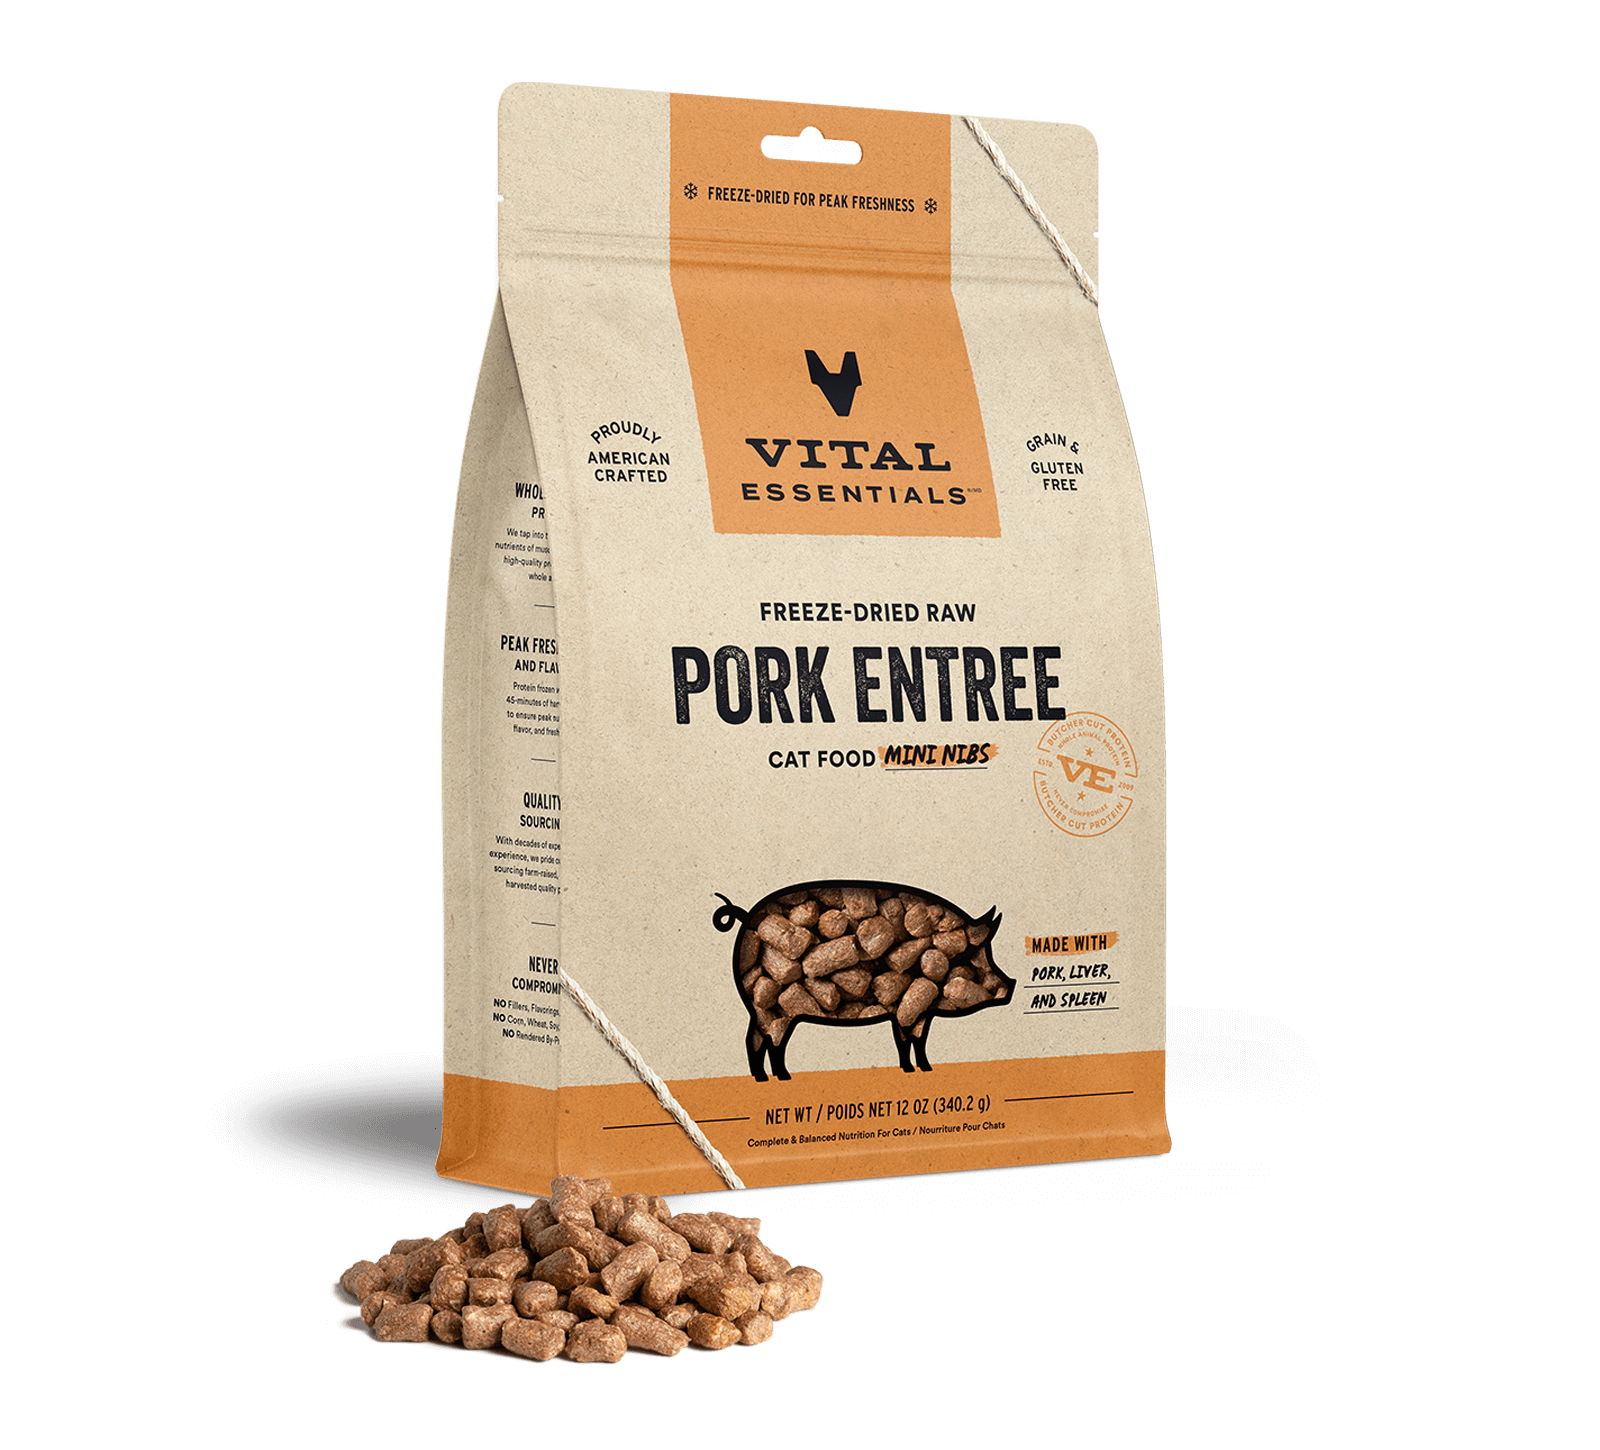 Vital Essentials Freeze-Dried Raw Pork Entree Cat Food Mini Nibs, 12 oz - Food